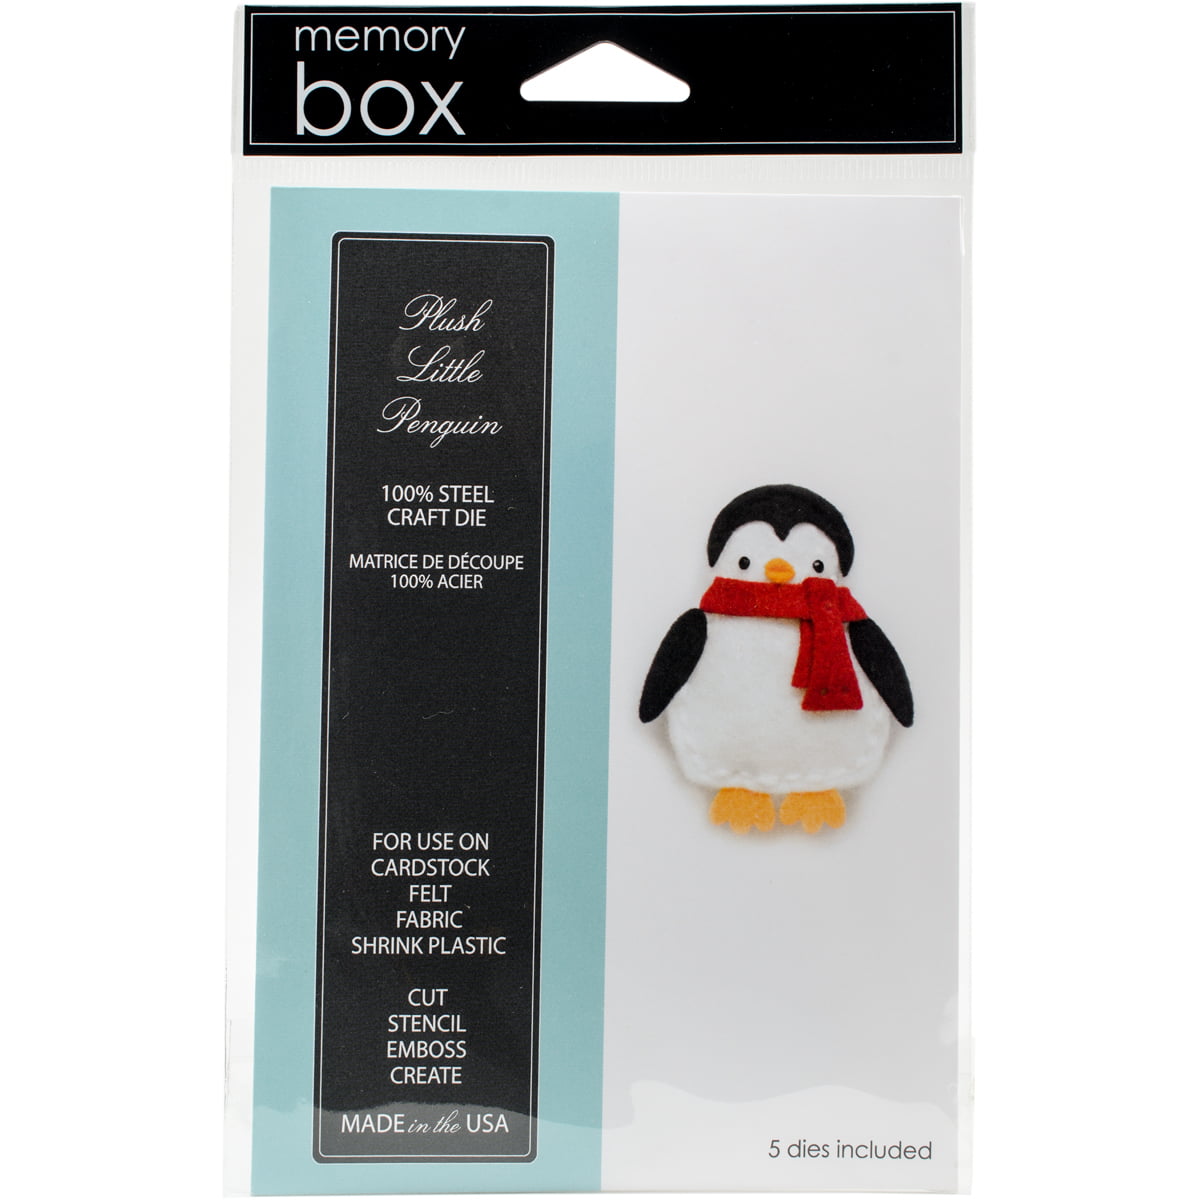 Memory Box Plush Little Penguin Dies 99554